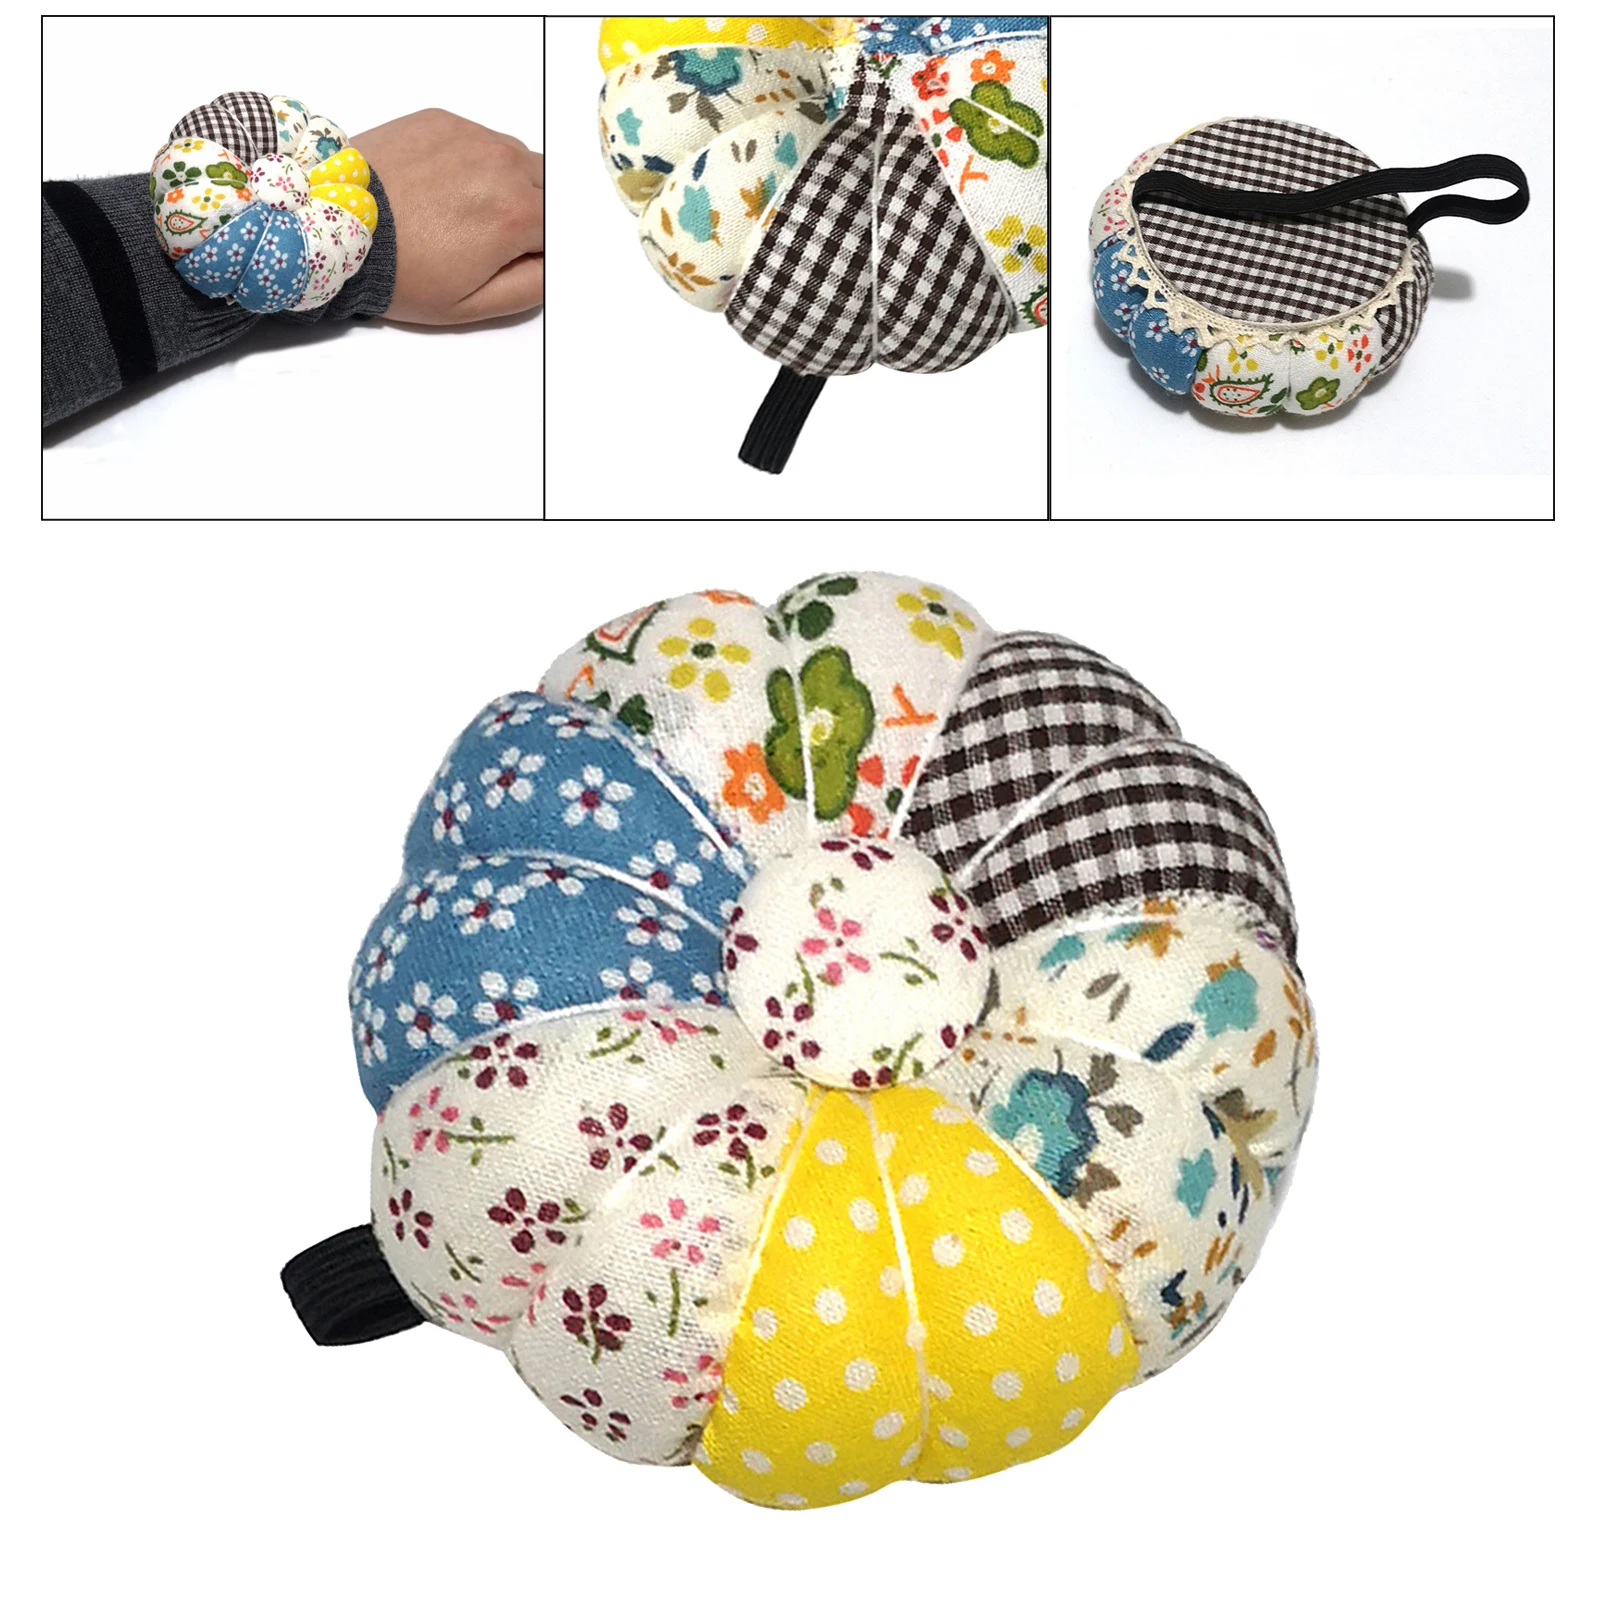 Functional Wrist Pin Cushion Sewing  Crafting Holder Pincushion